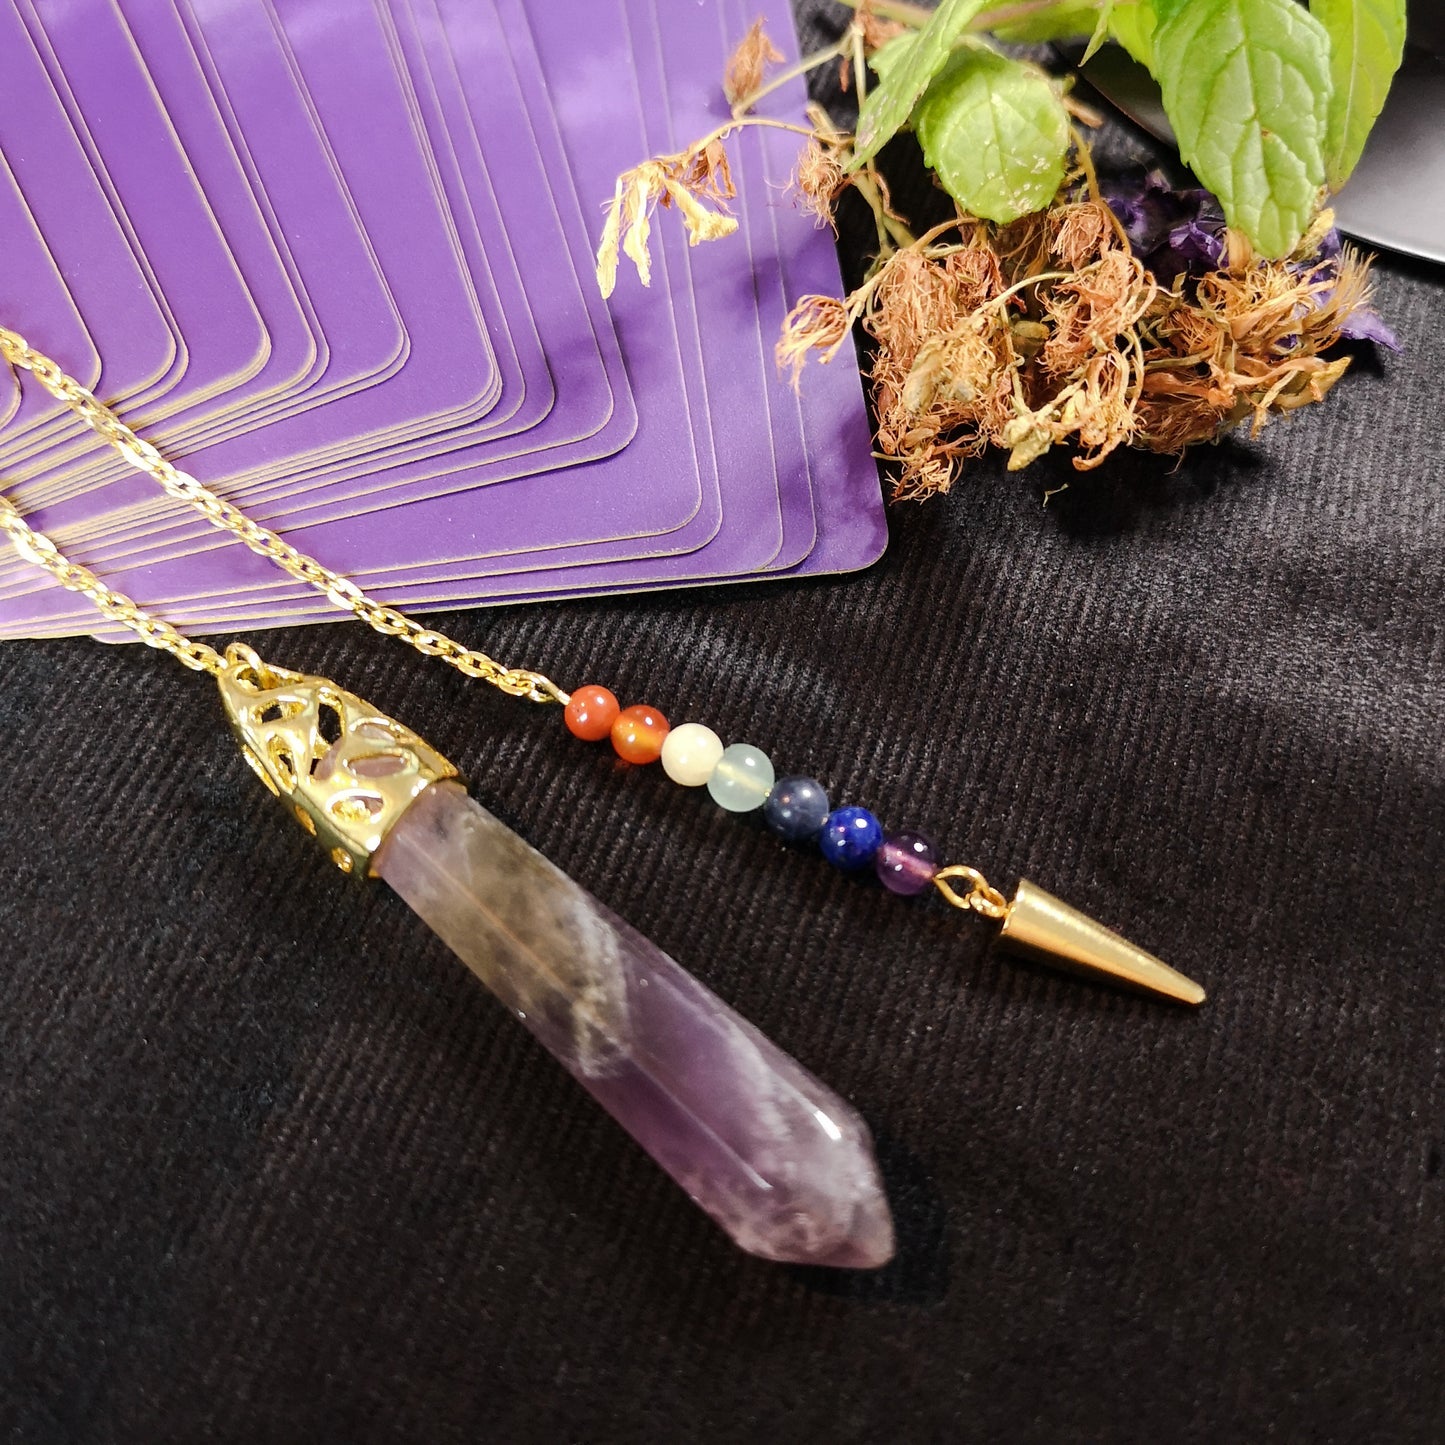 7 chakras amethyst golden pendulum with a spike Baguette Magick